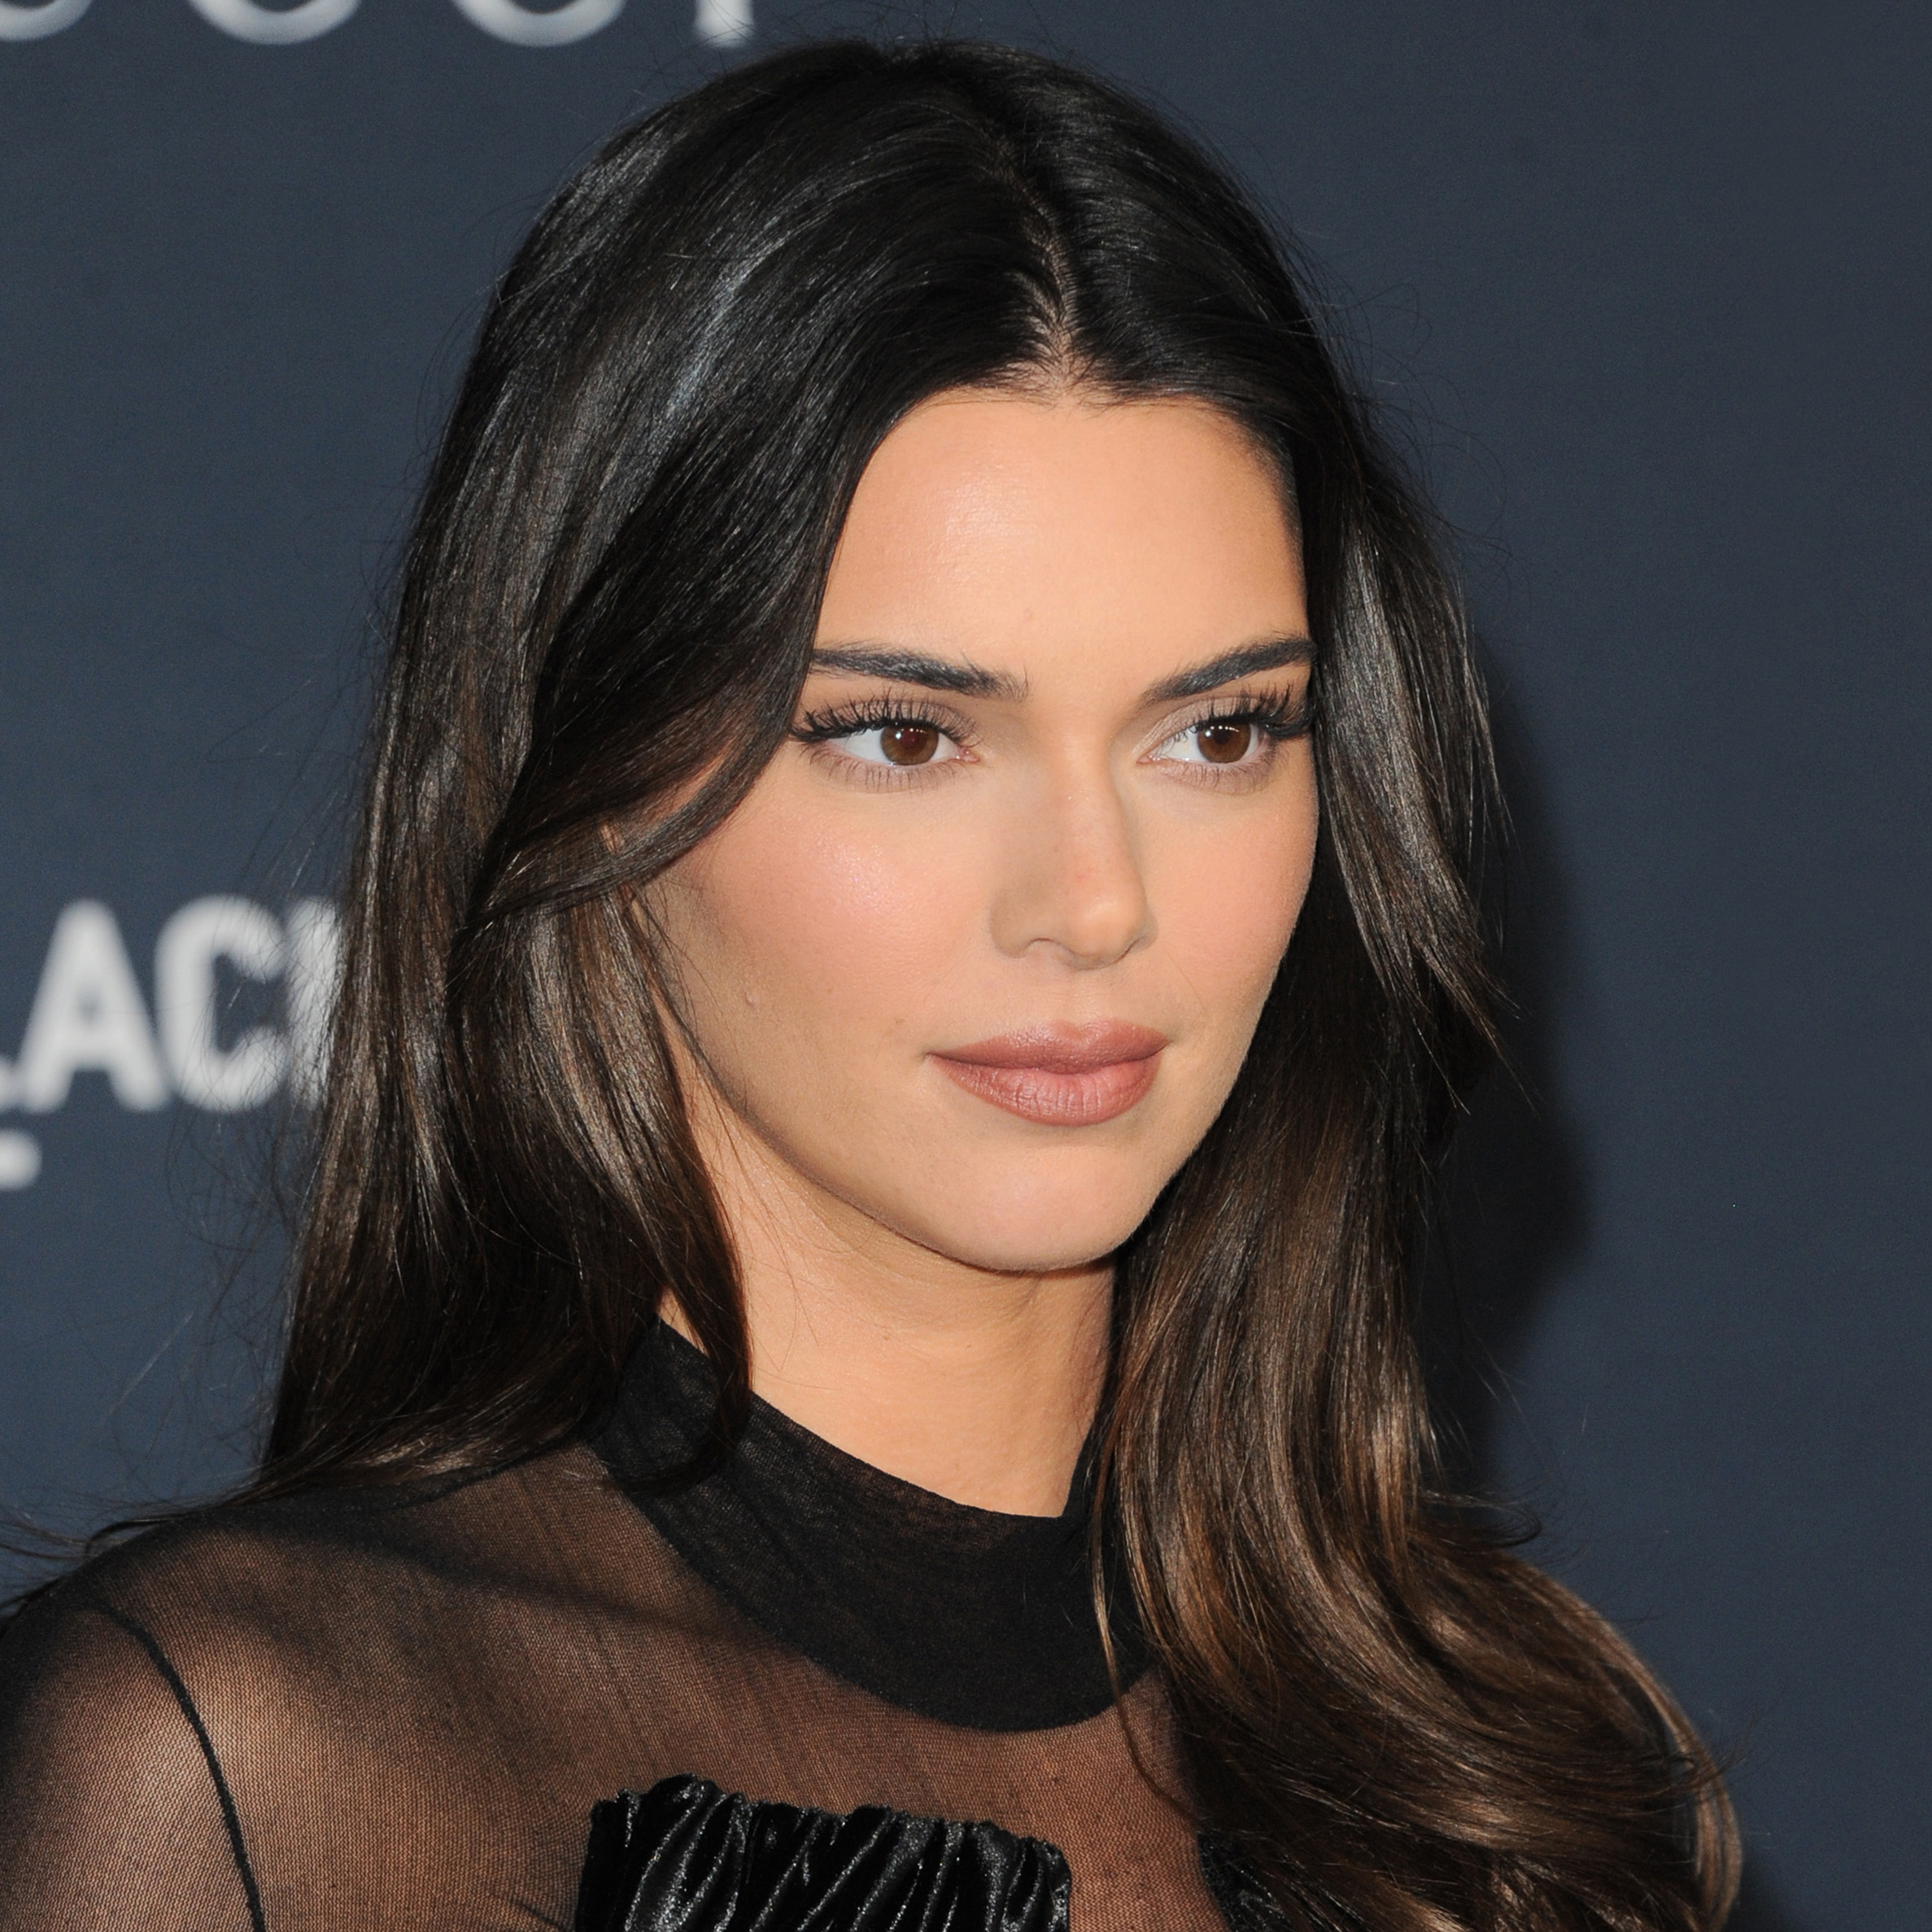 Kendall Jenner named new global ambassador for L'Oréal Paris